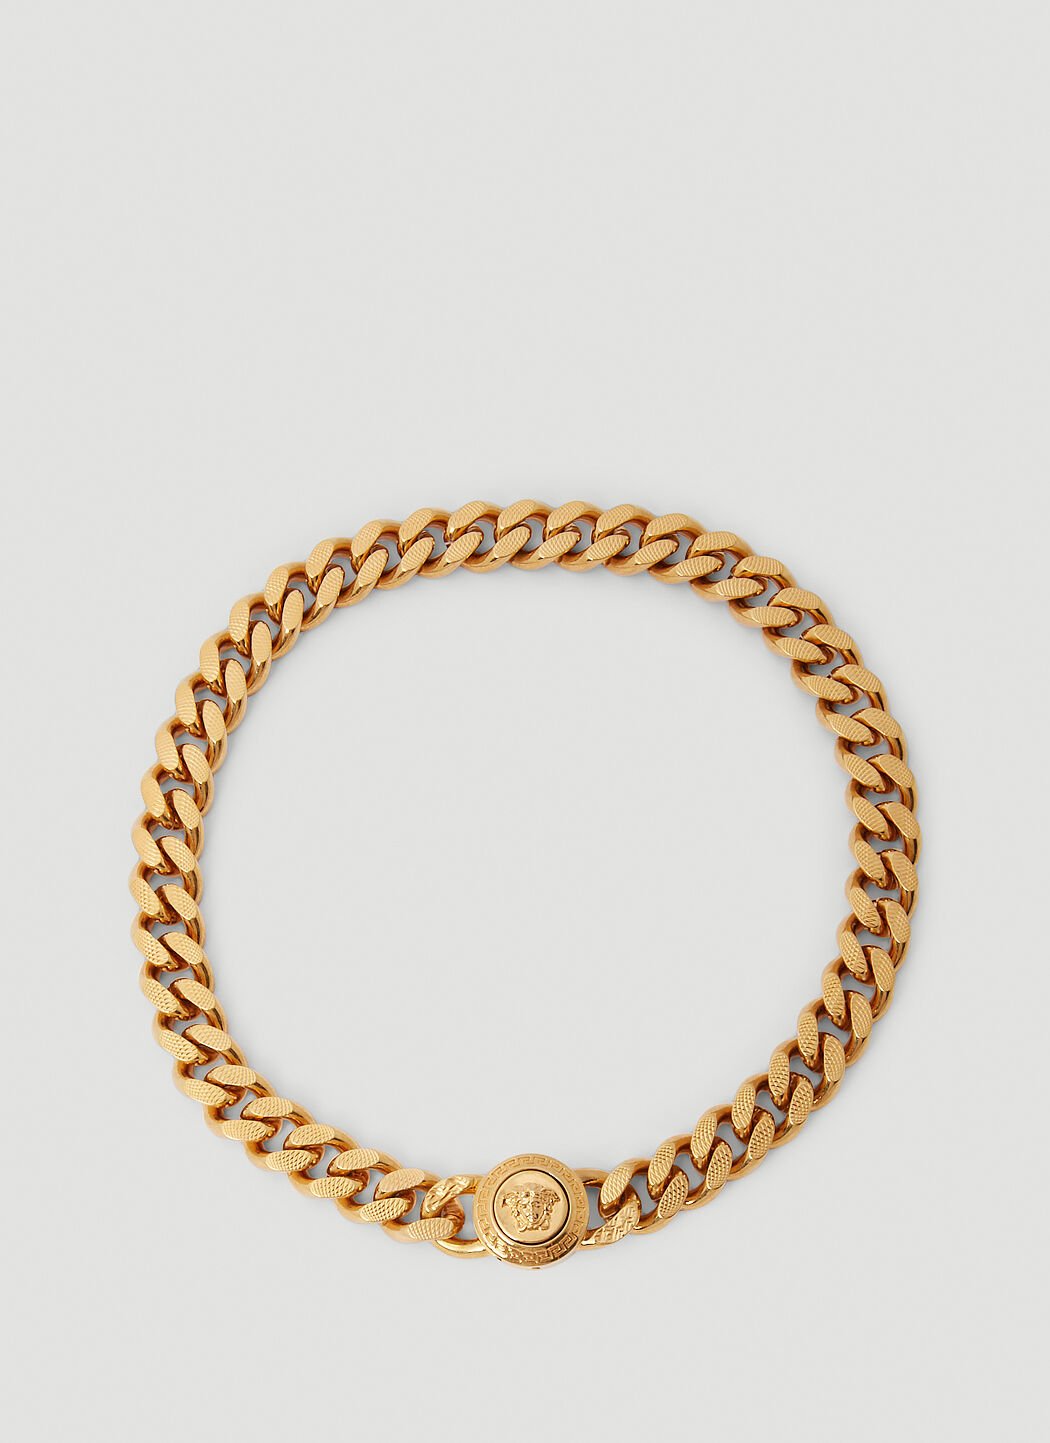 Versace 美杜莎链环项链 金色 ver0155041